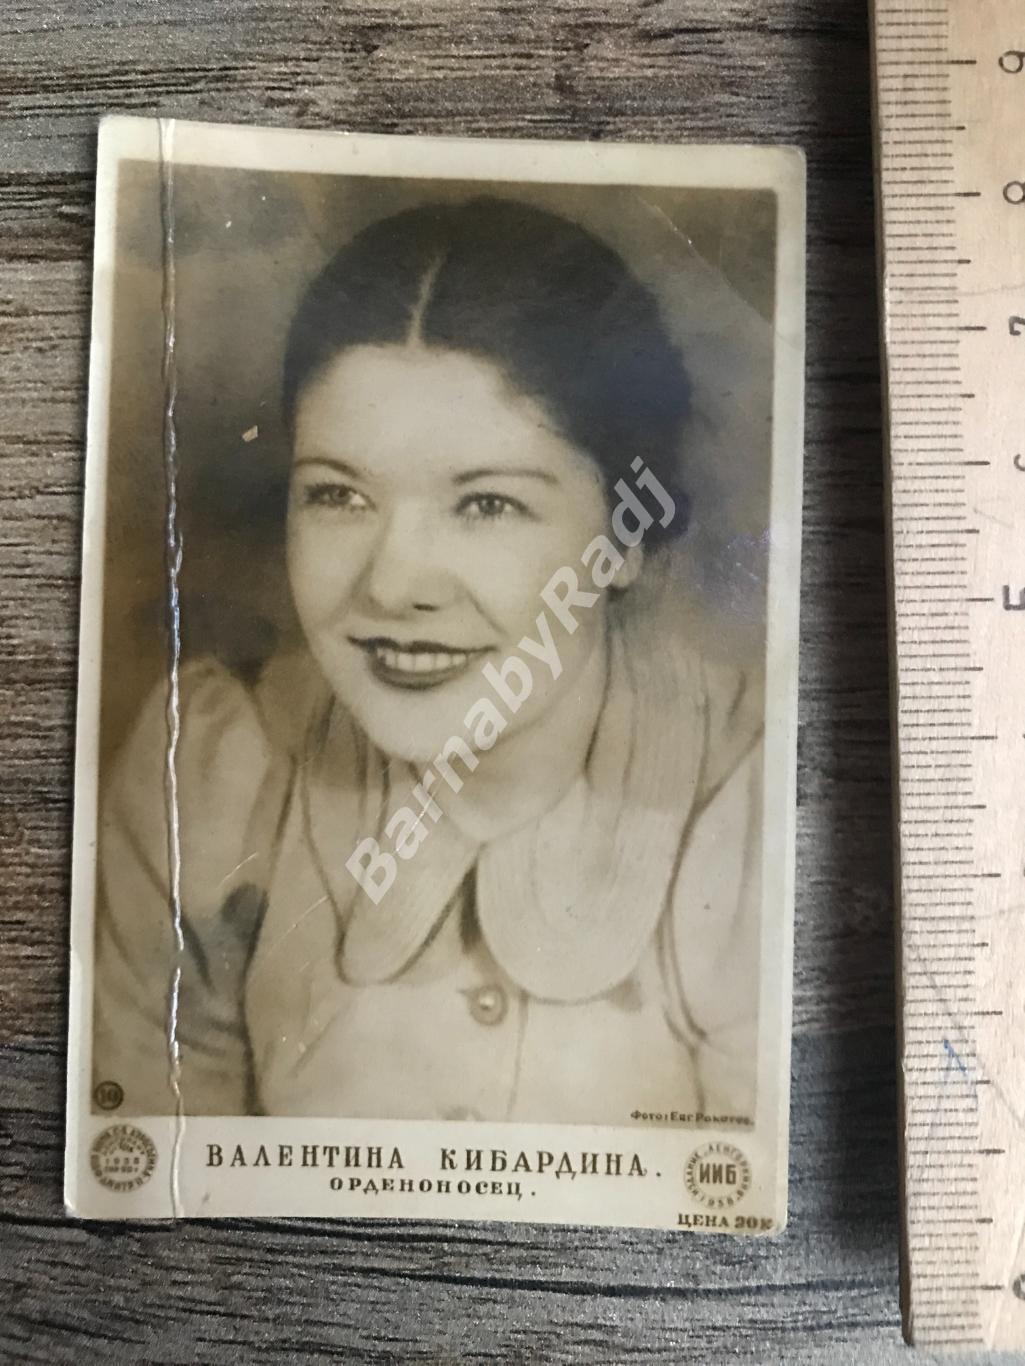 Валентина Кибардина 1938 г. малый формат